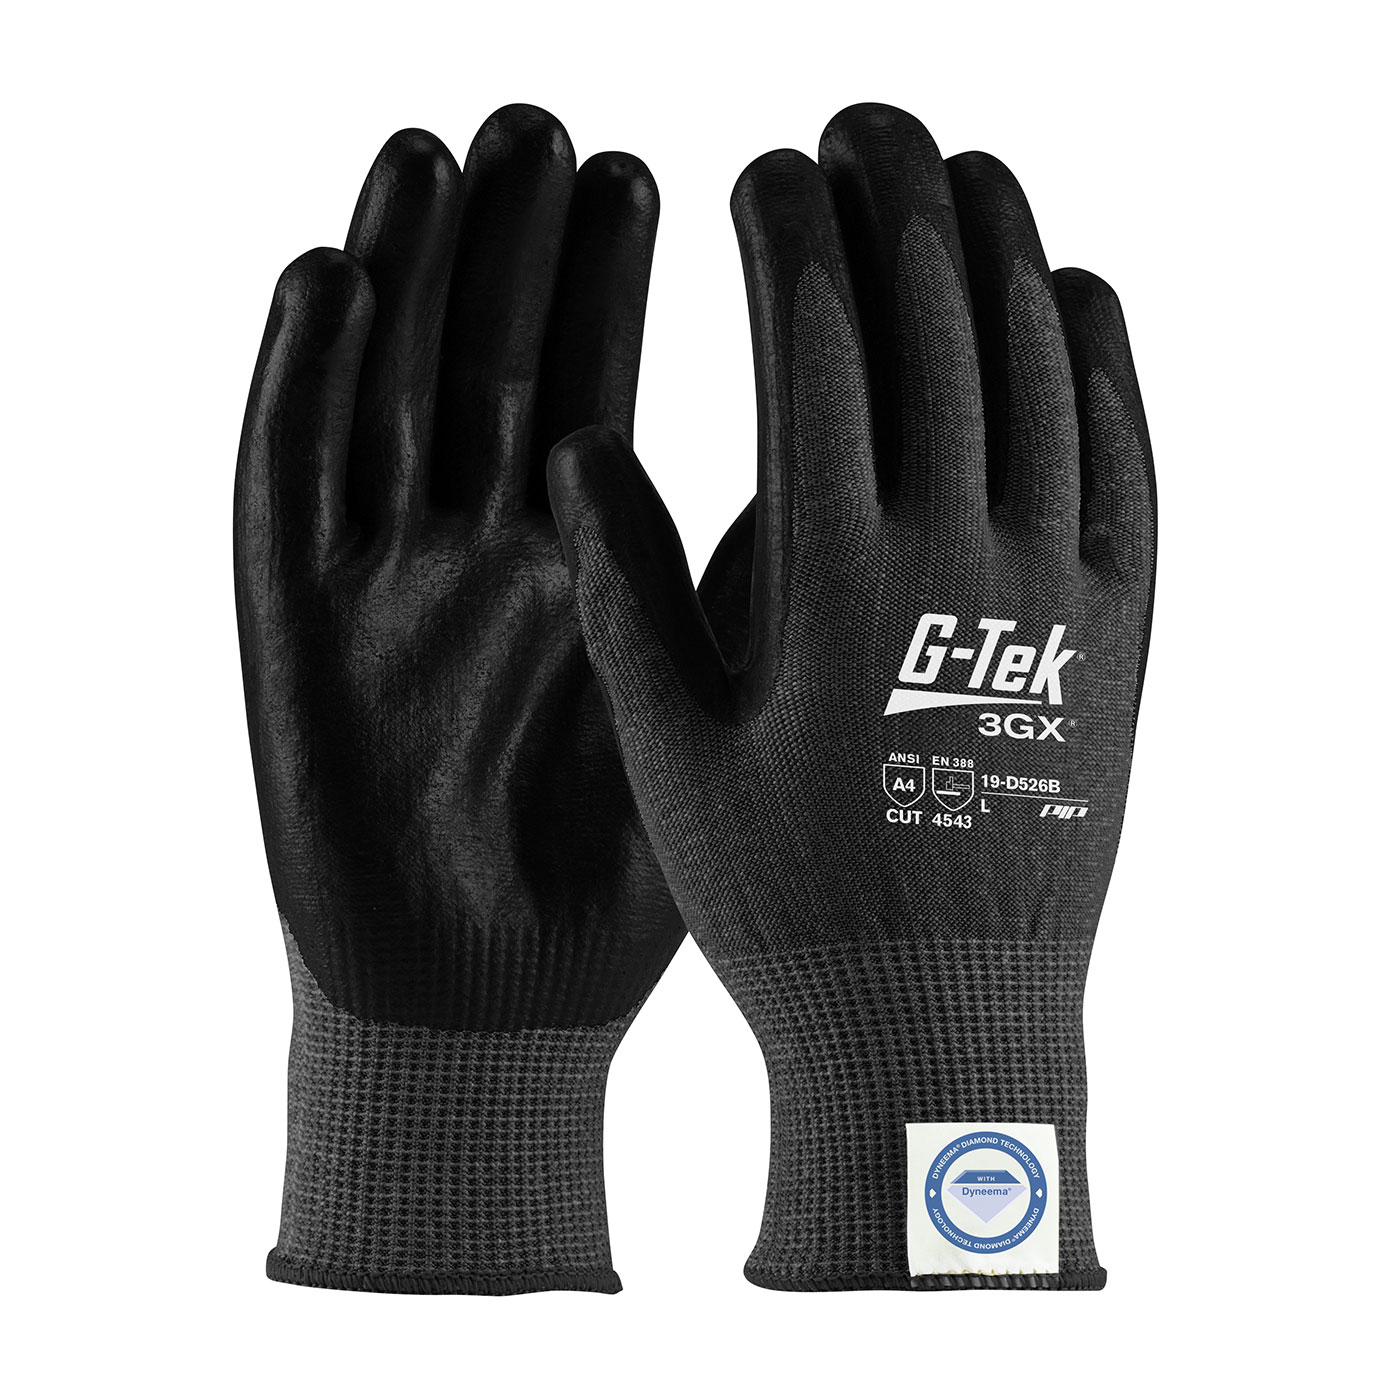 19-D526B PIP®G-Tek®3GX®黑色无缝针织Dyneema®钻石混合手套，聚氨酯涂层手掌和手指平滑握把-触摸屏兼容